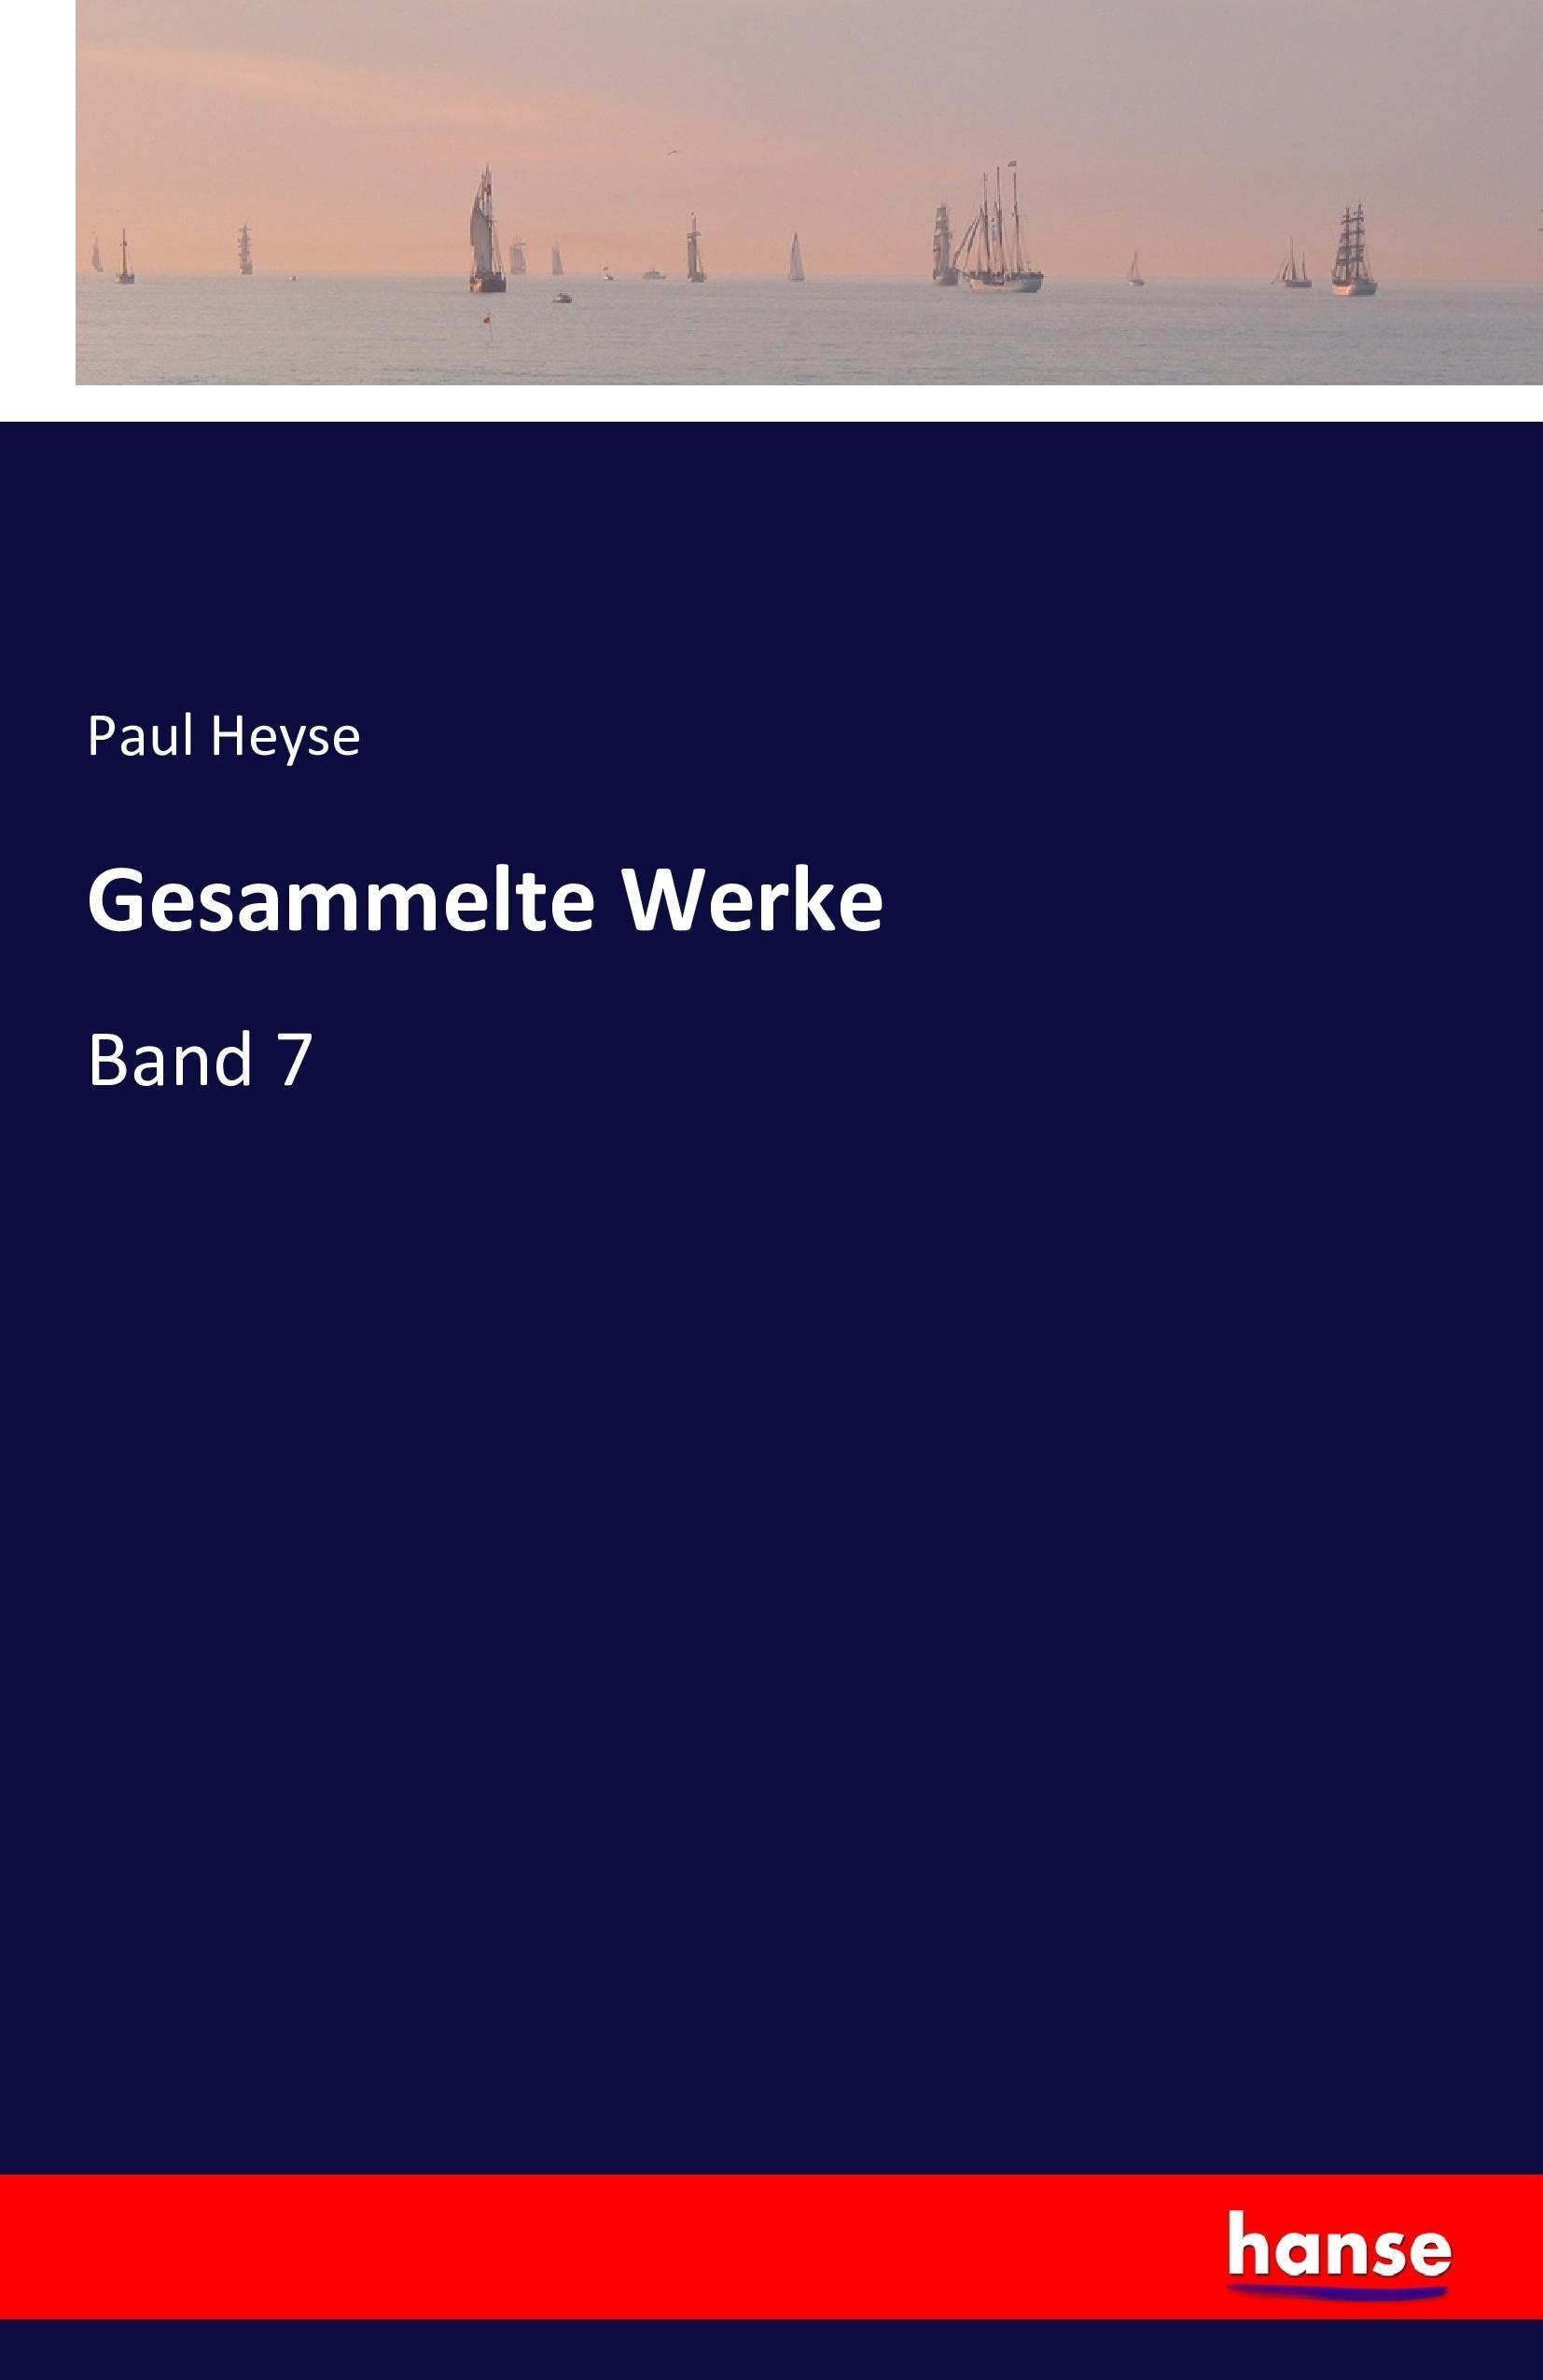 Gesammelte Werke / Band 7 / Paul Heyse / Taschenbuch / Paperback / 412 S. / Deutsch / 2016 / hansebooks / EAN 9783743323018 - Heyse, Paul